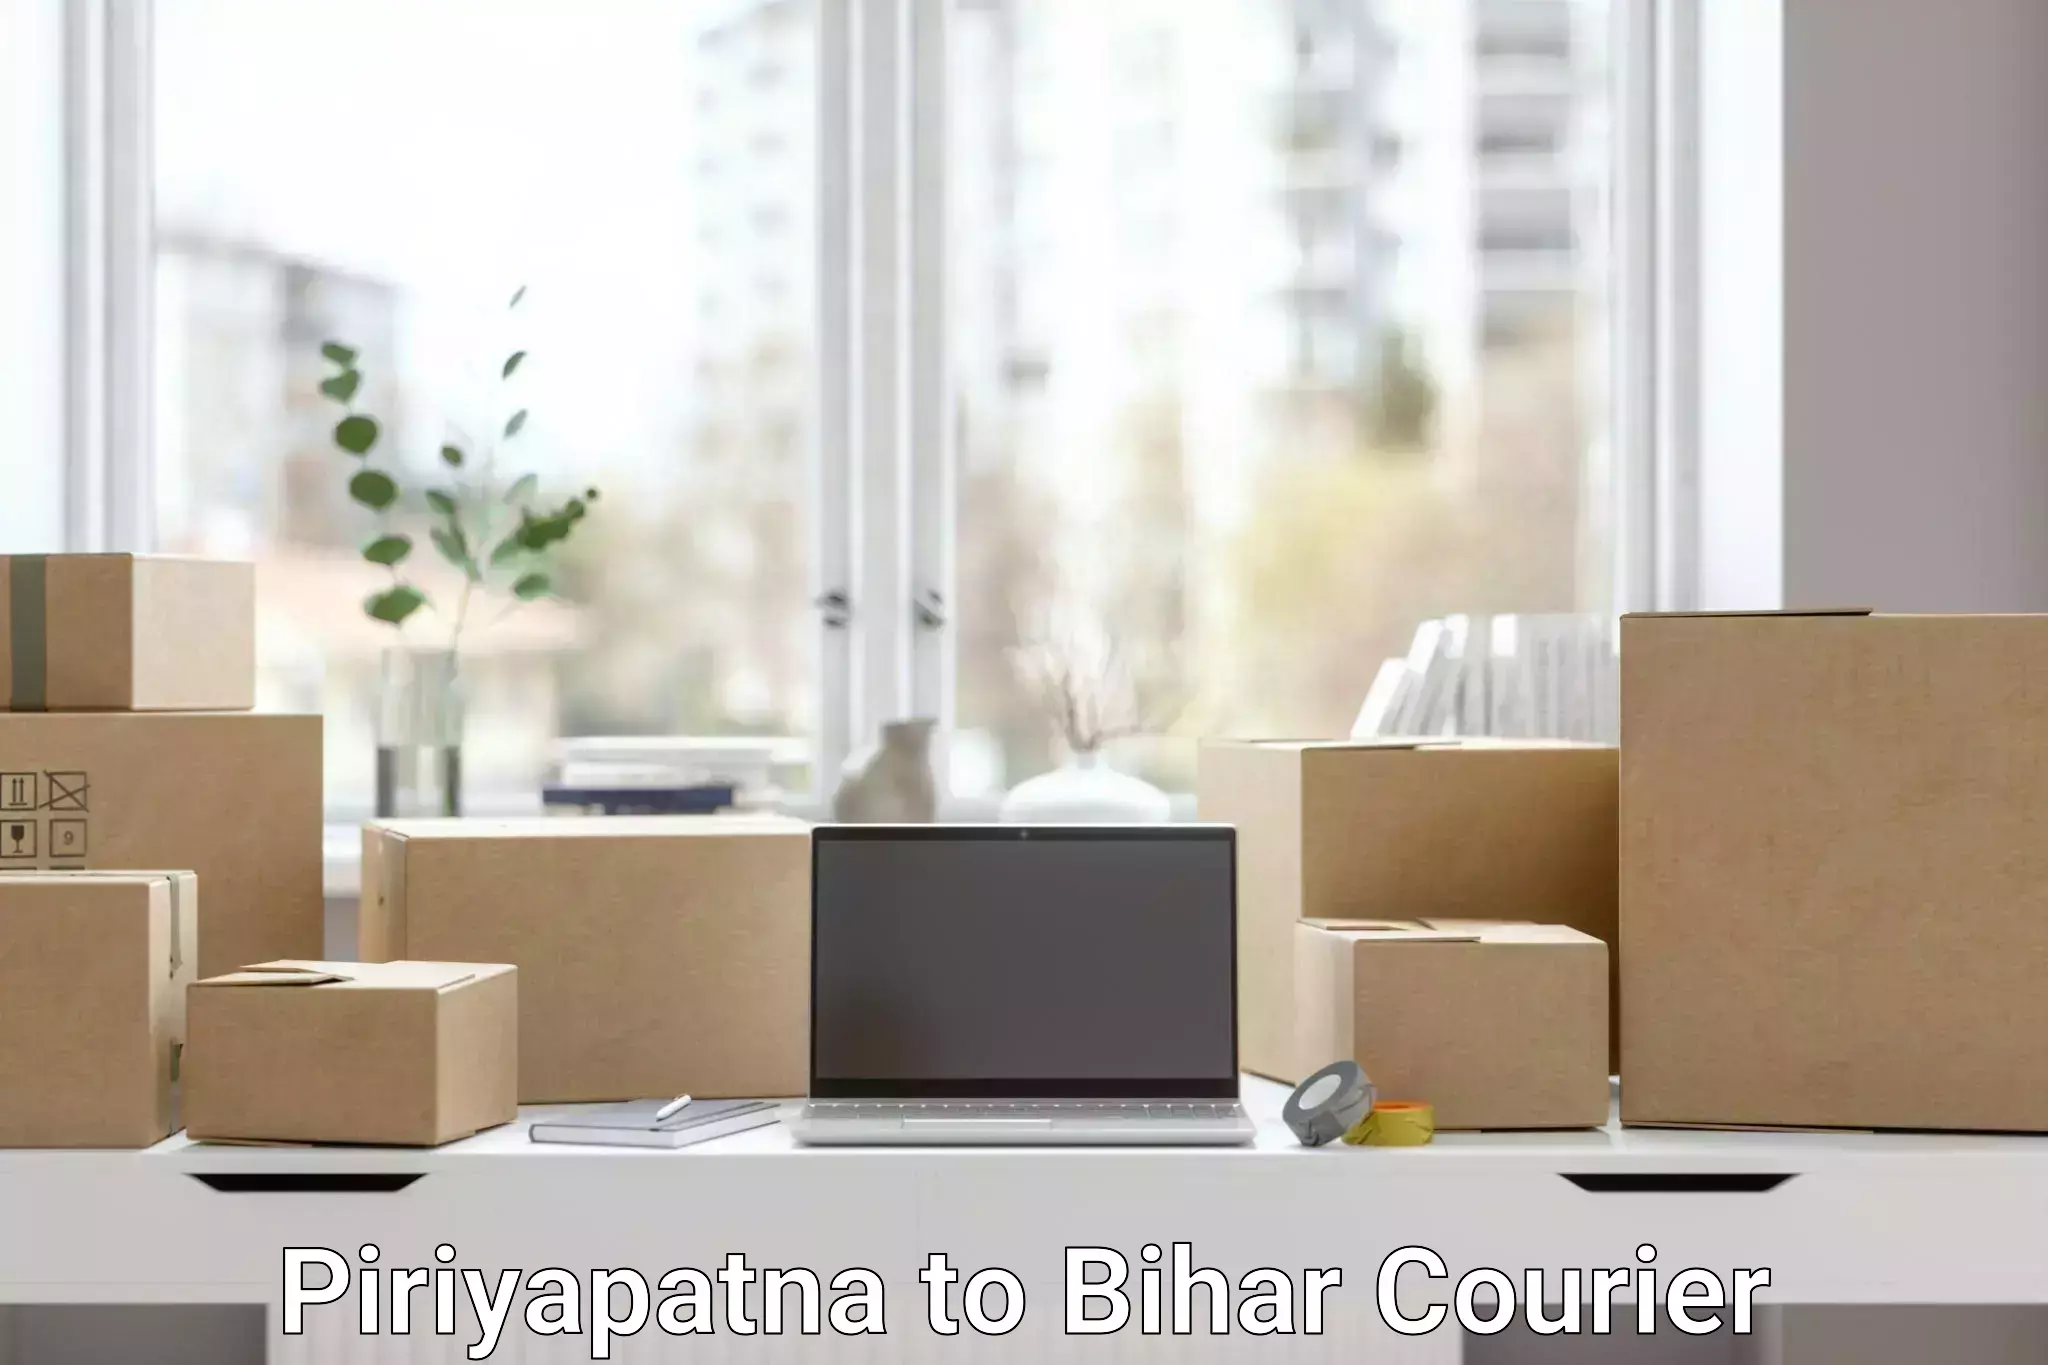 Premium courier services Piriyapatna to Bankipore